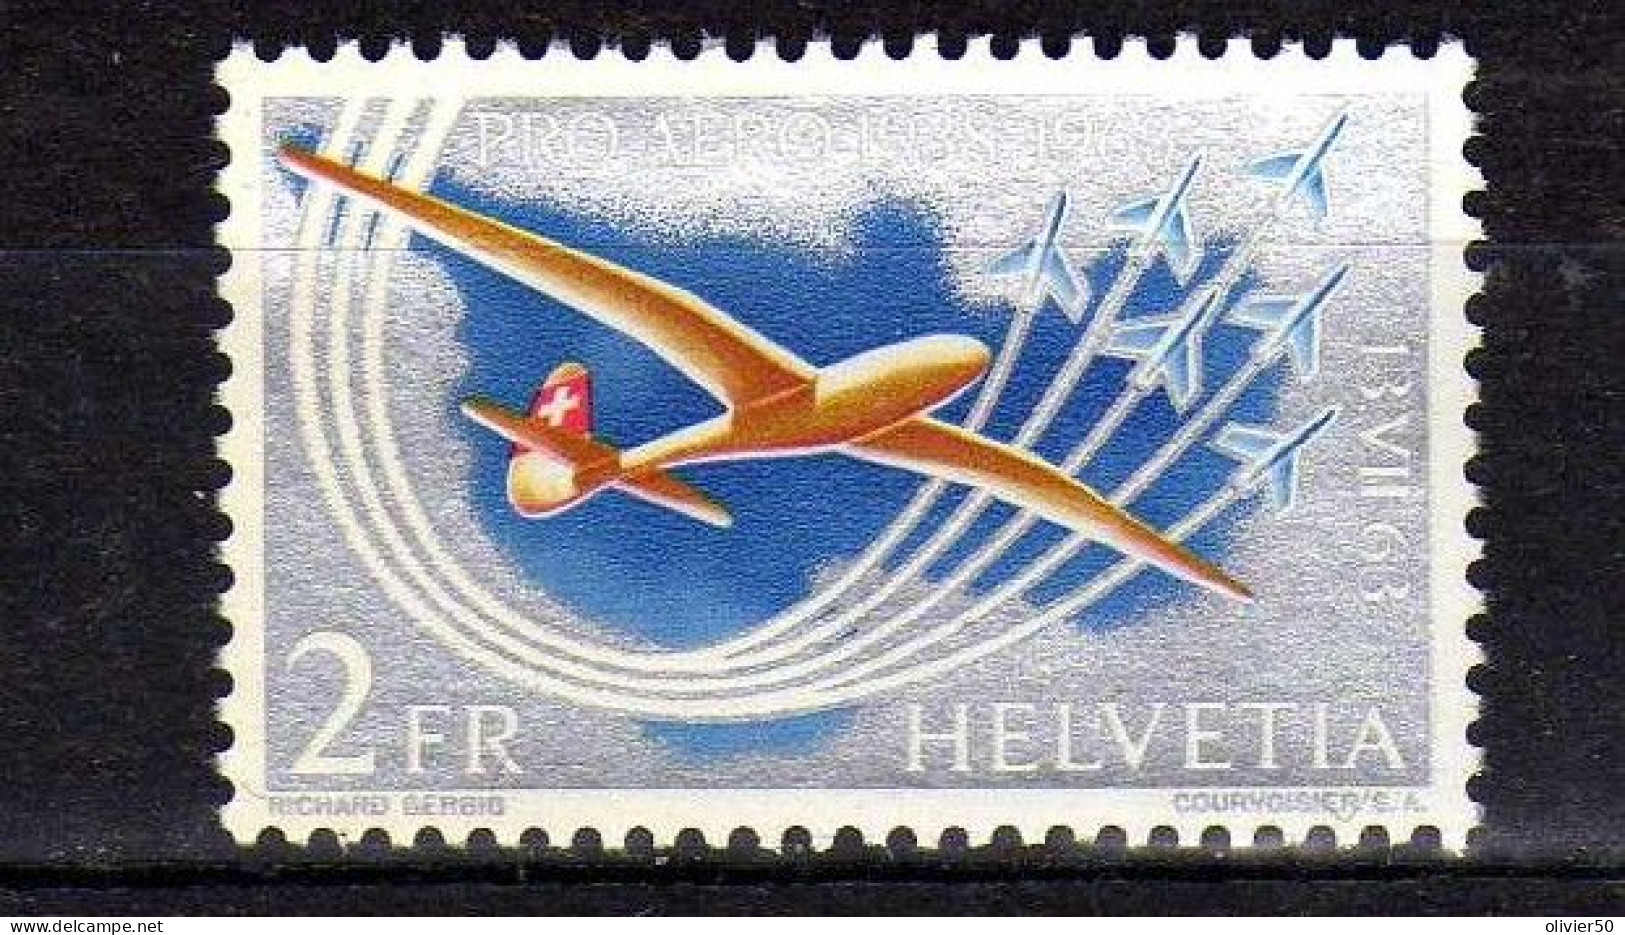 Suisse (1963) - Pro Aero -  Traversee Des Alpes - Neuf** - MNH - Nuovi